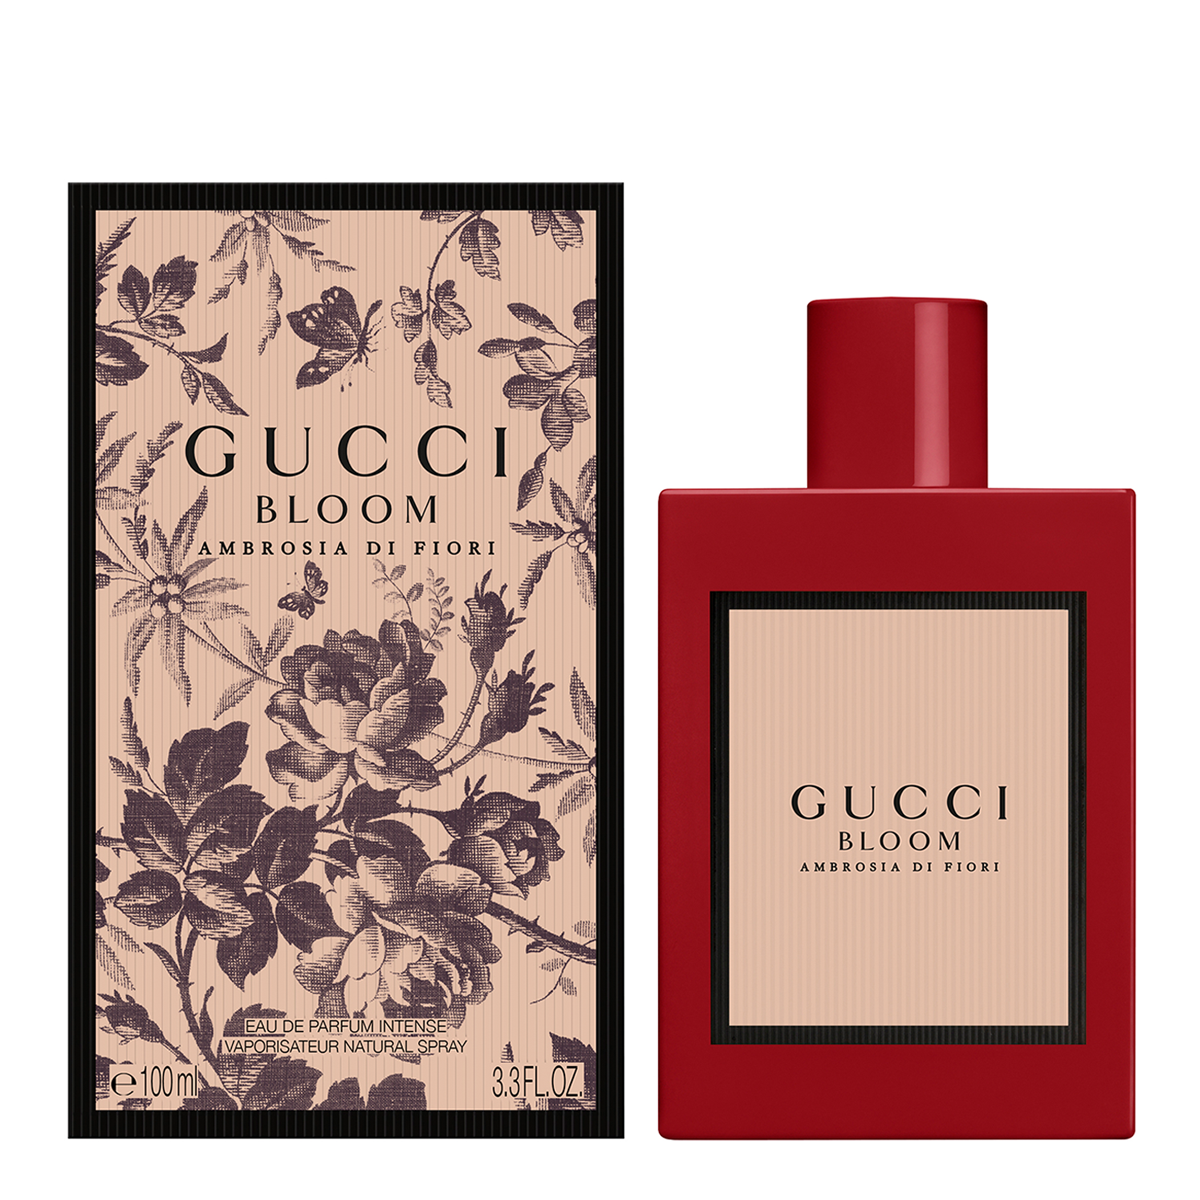 Gucci Bloom Ambrosia di Fiori Eau de Parfum Intense 100ml